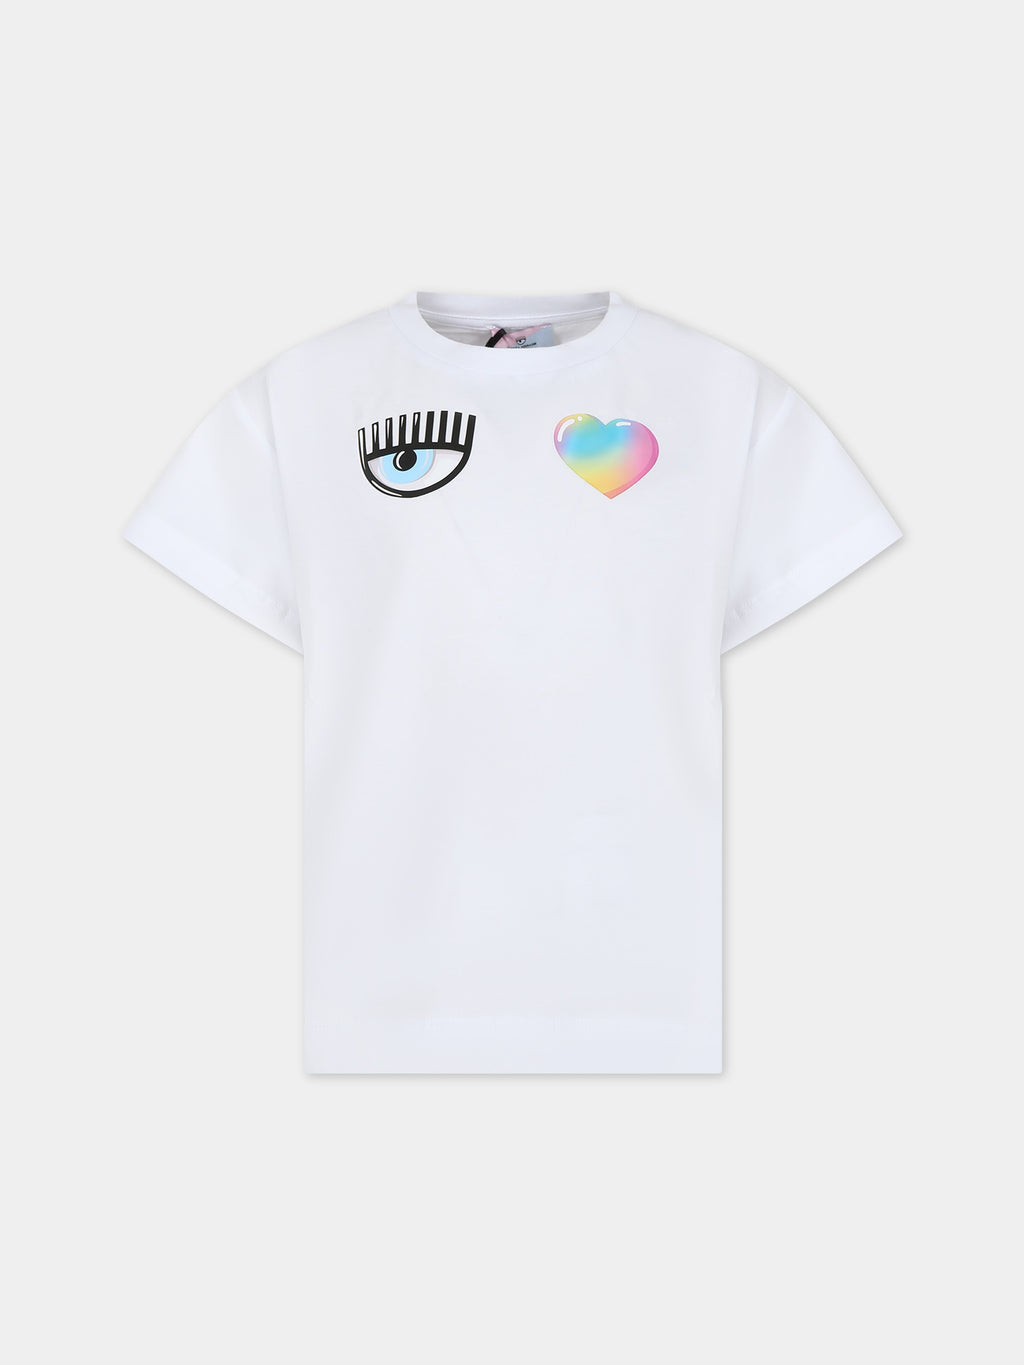 T-shirt blanc pour fille avec yeux et coeur flirteurs